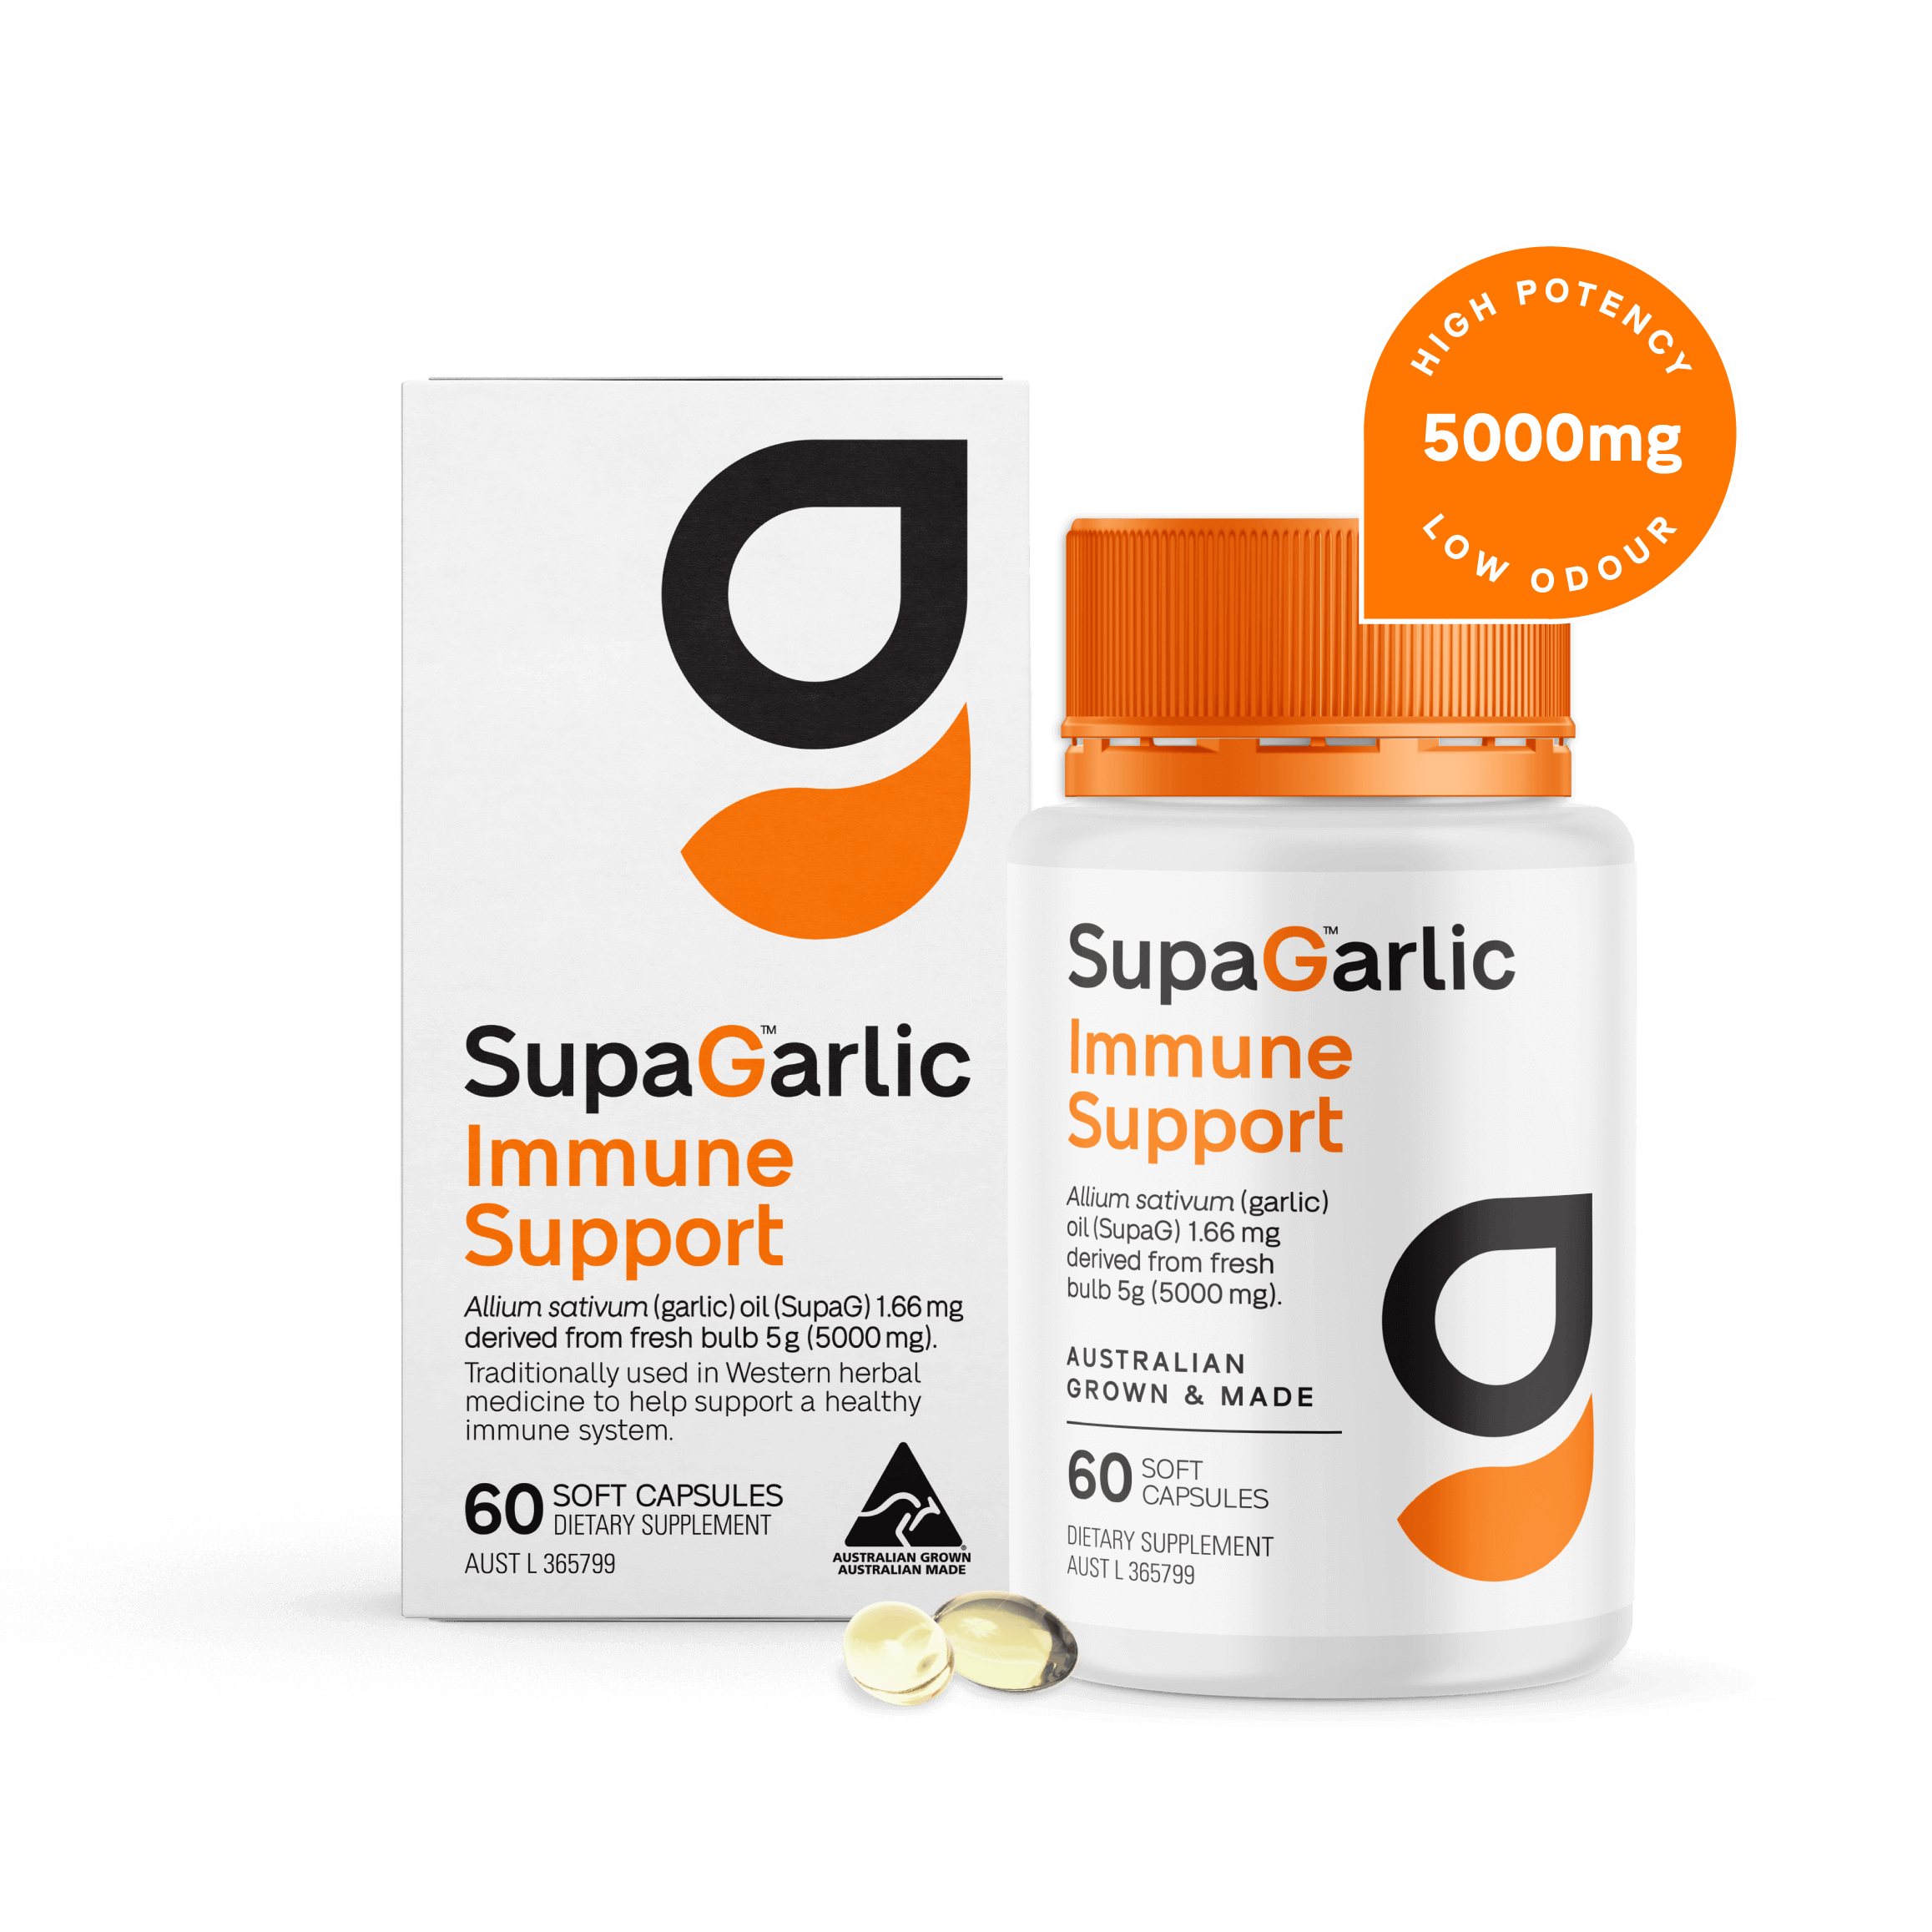 SupaGarlic Immune Support